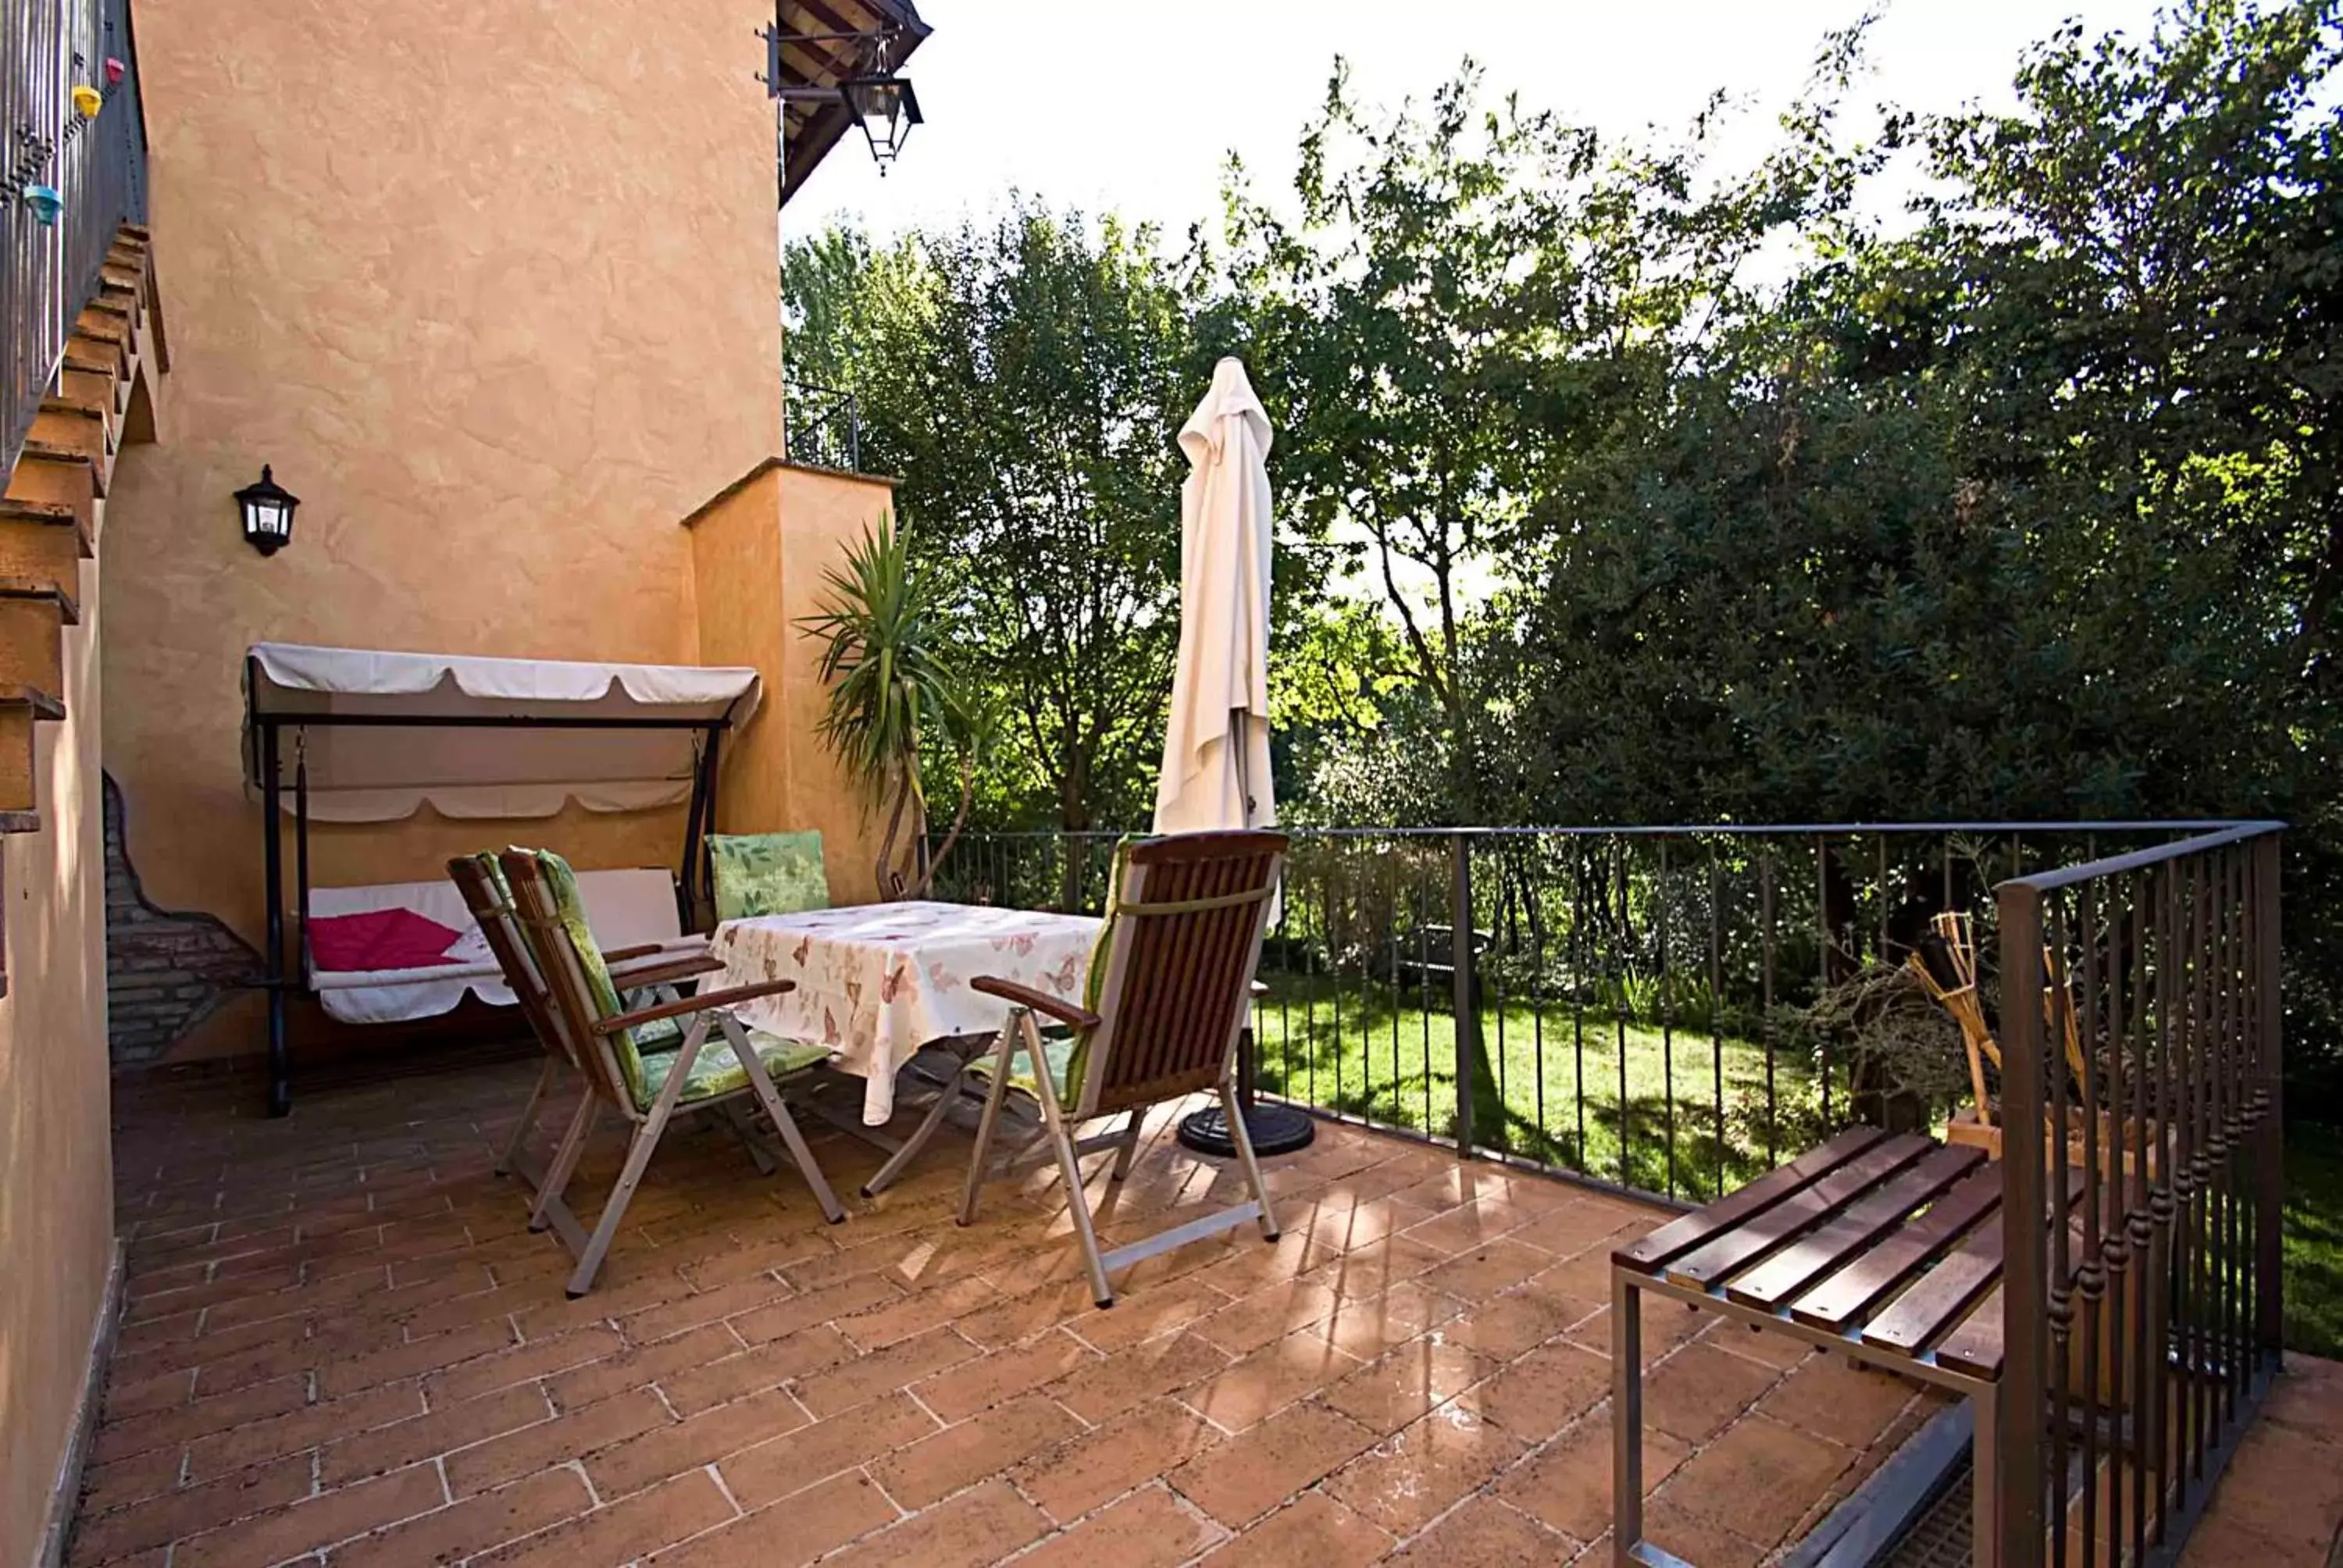 Balcony/Terrace, Patio/Outdoor Area in Casale del Monsignore